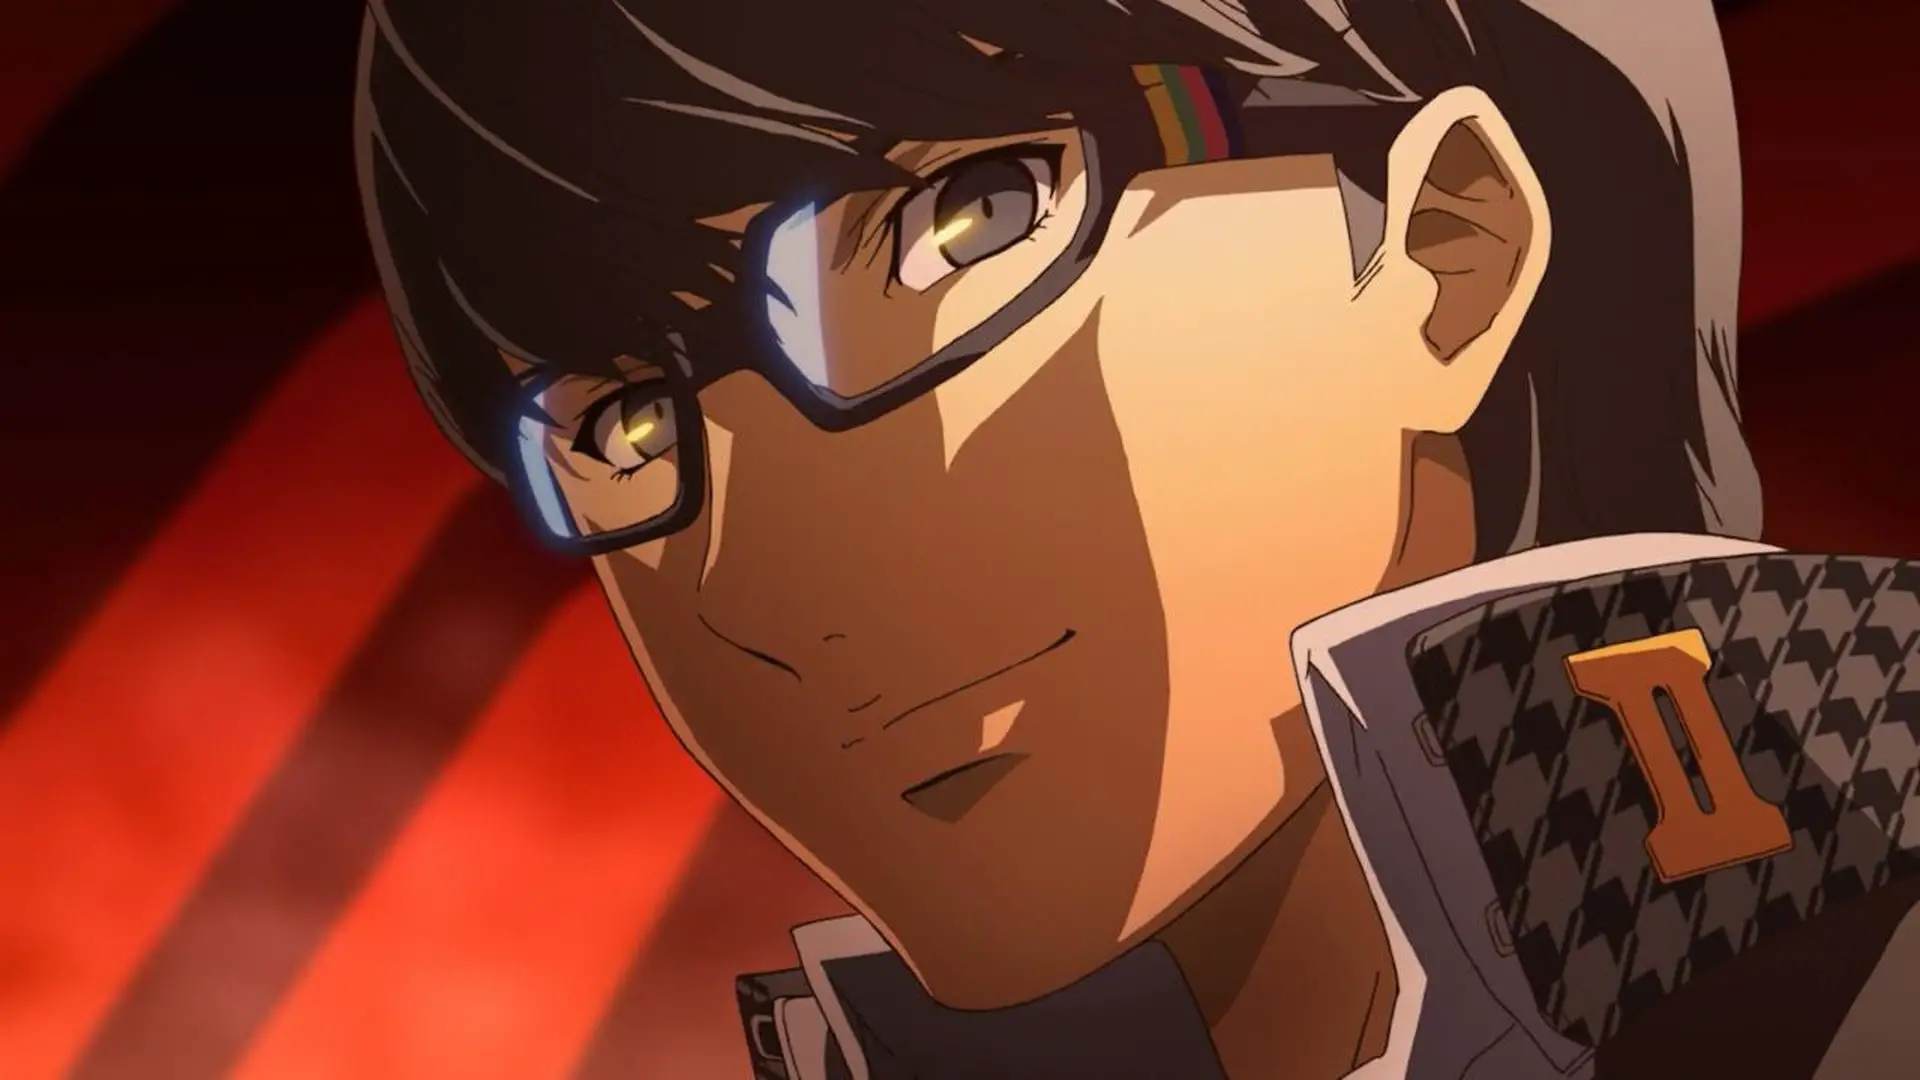 Persona 4 Golden Ending: el chico anime viste una camisa de cuello alto en blanco y negro, anteojos cuadrados y una sonrisa siniestra.Fondo rojo rayado detrás de él